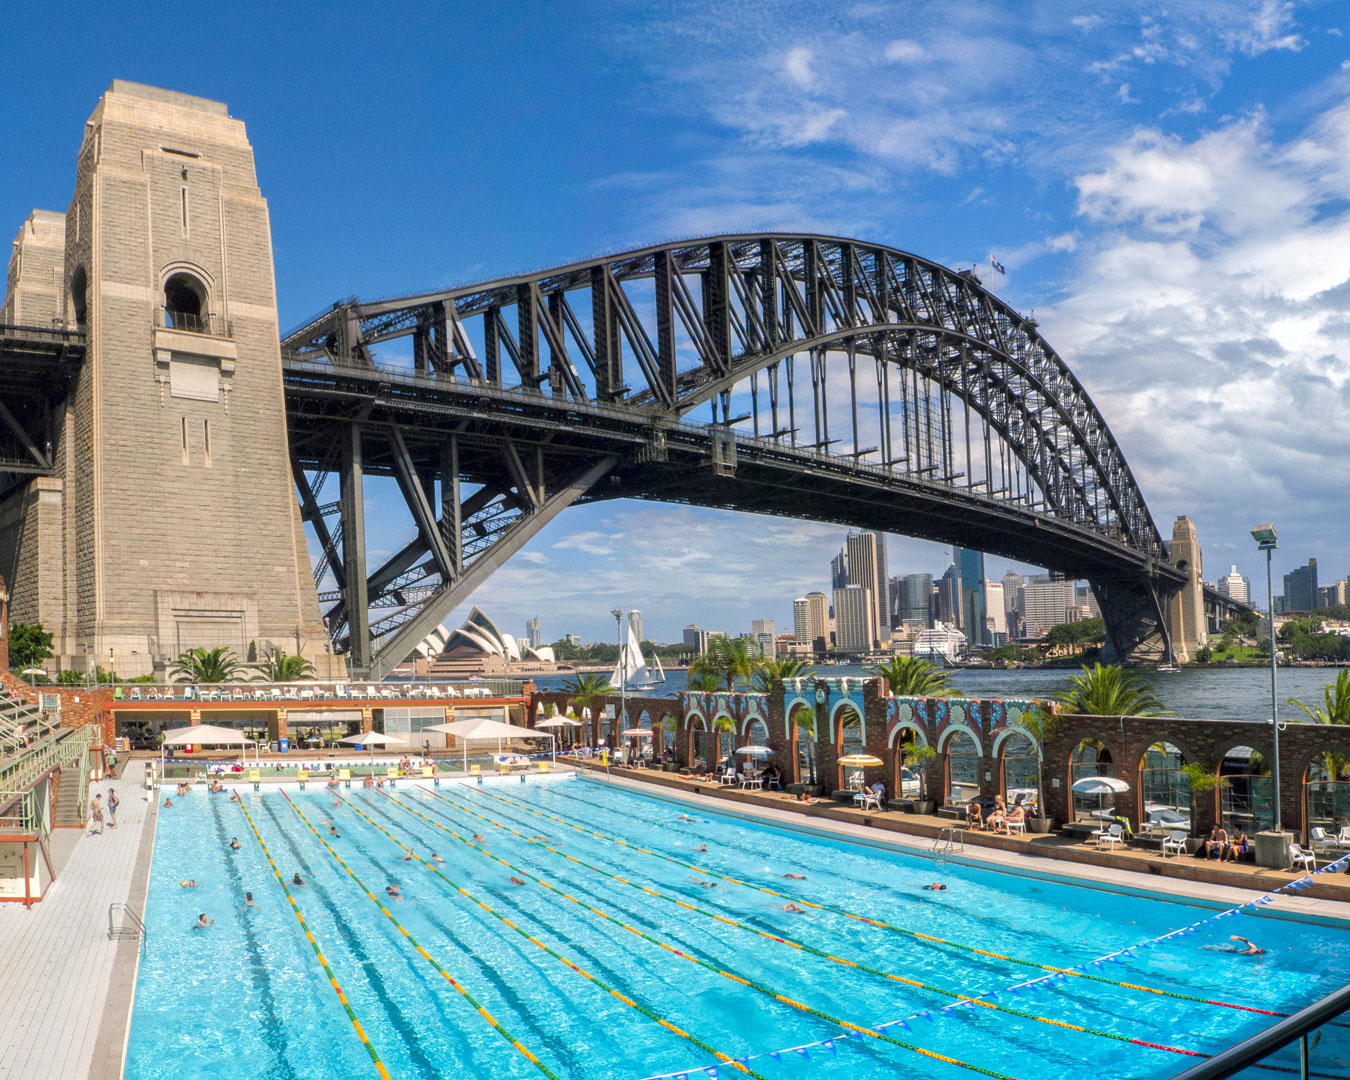 North Sydney Olympic Pool